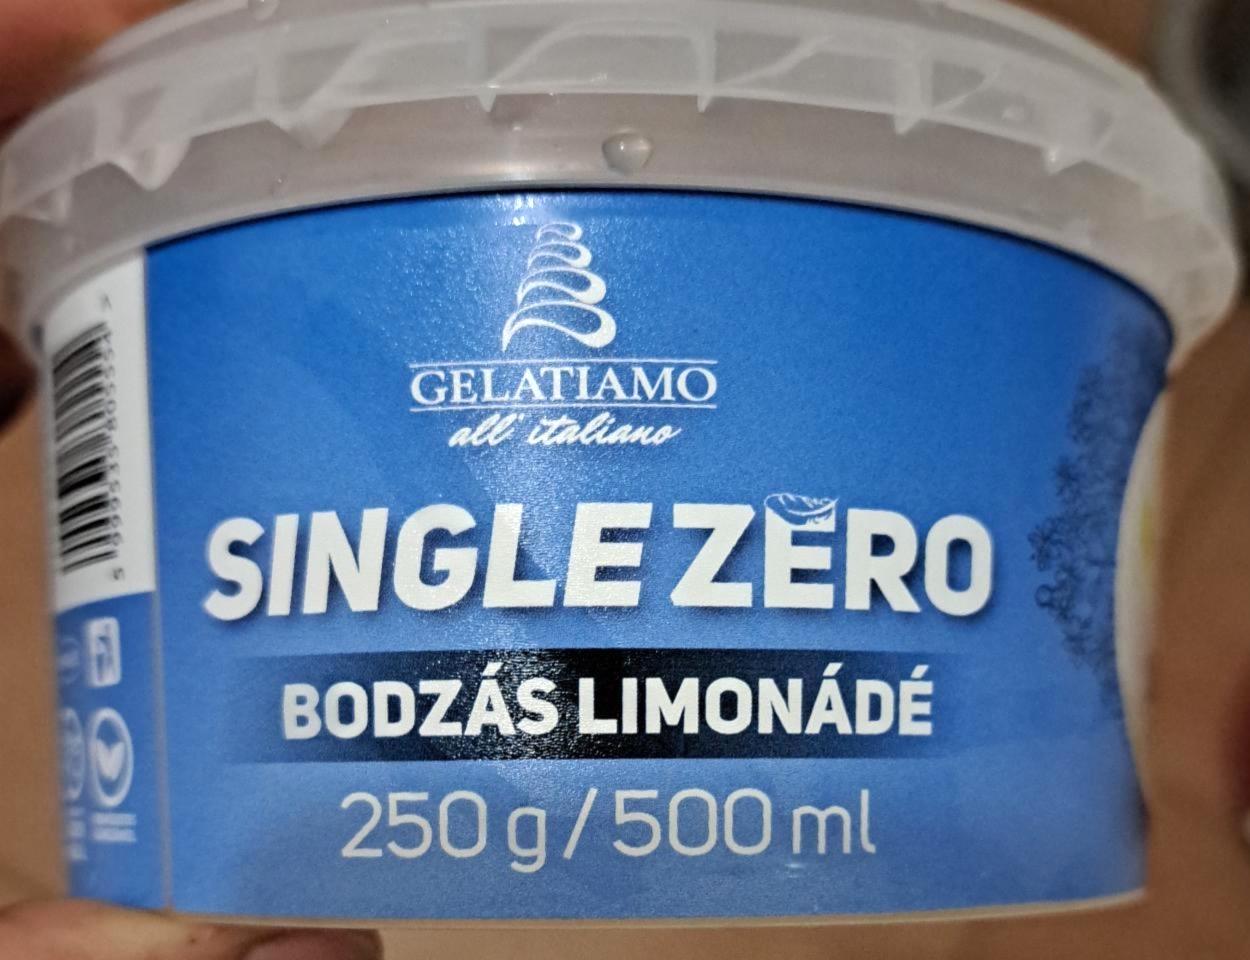 Képek - Single zero fagylalt Bodzás limonádé Gelatiamo